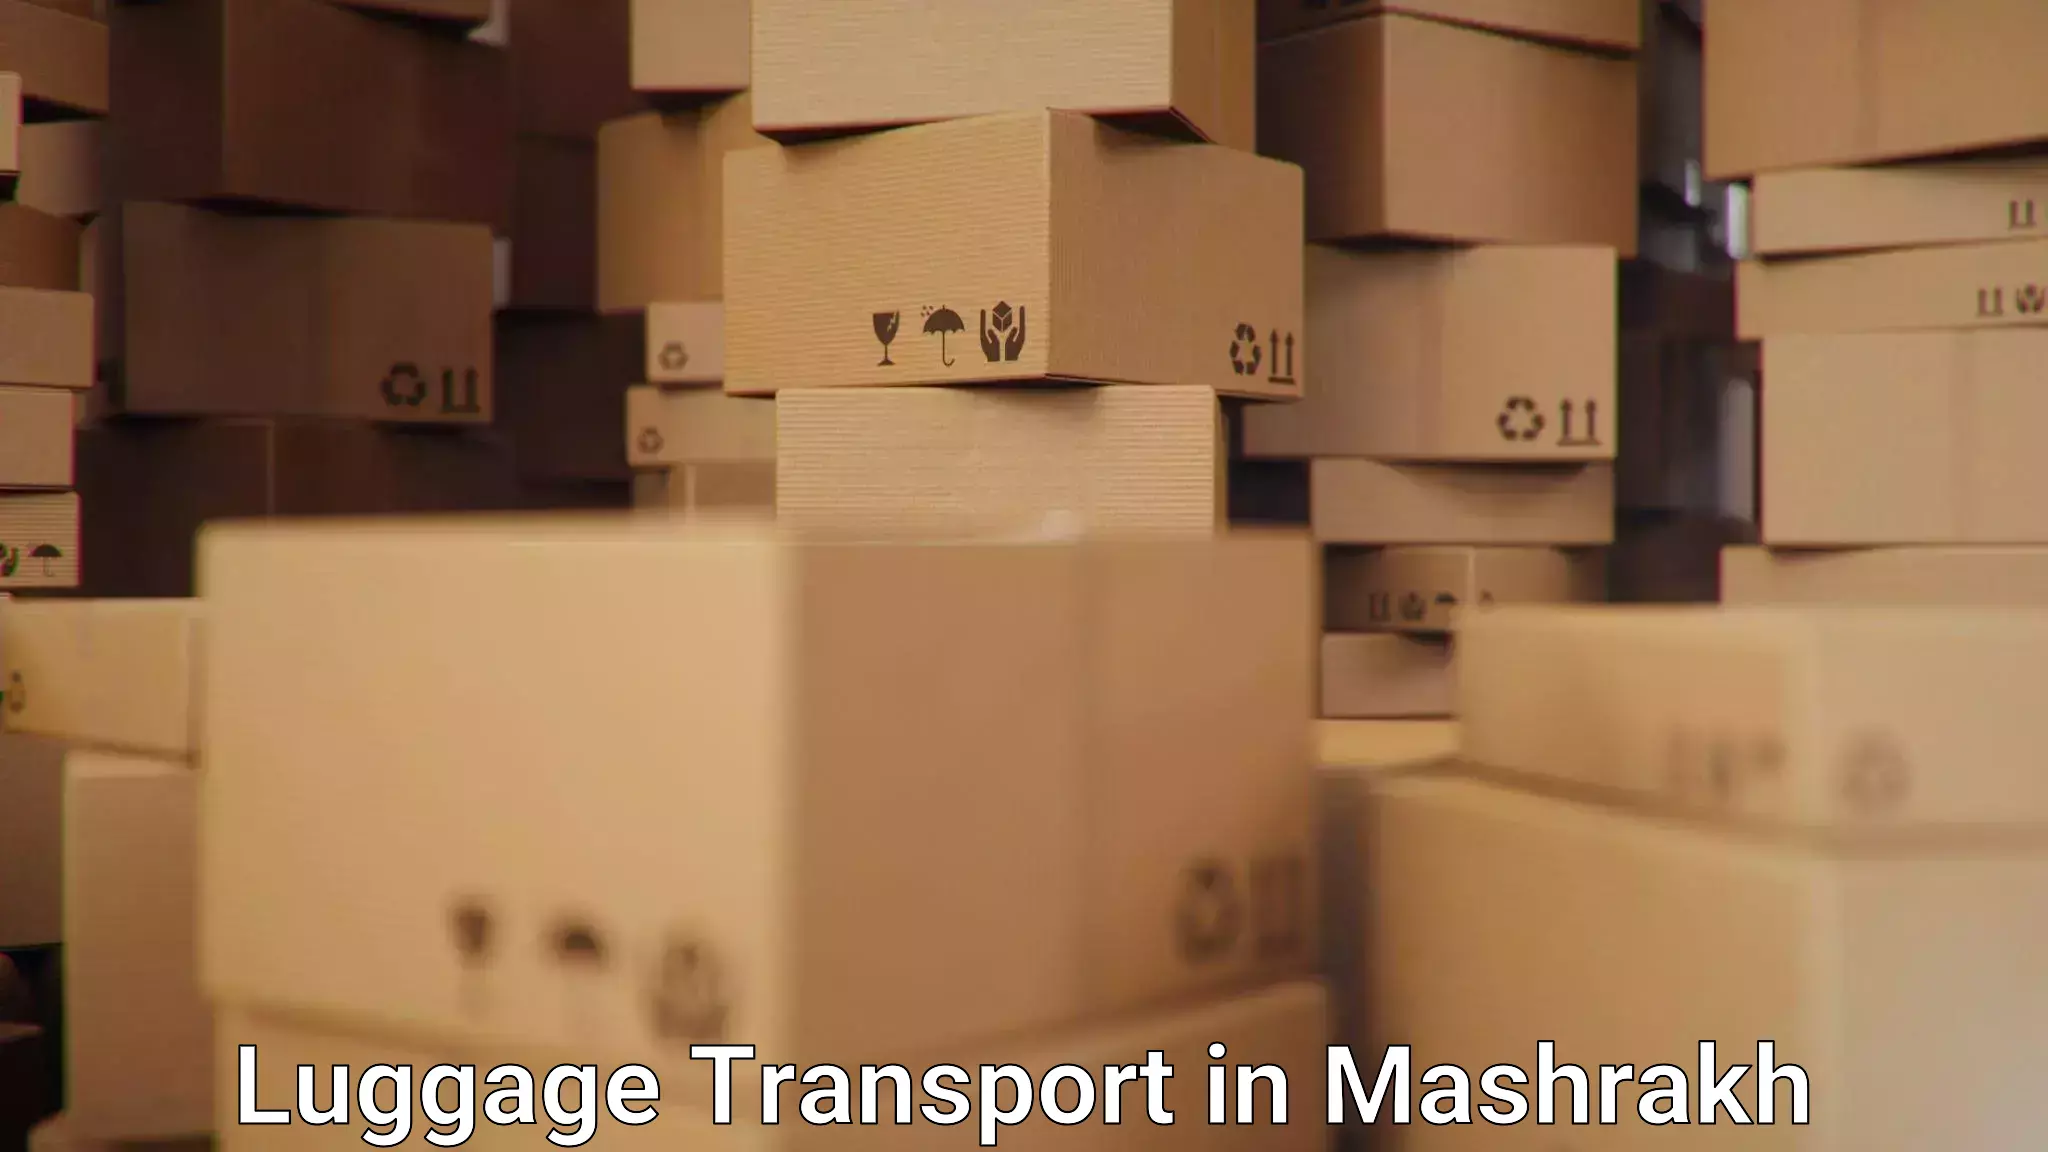 Baggage delivery support in Mashrakh